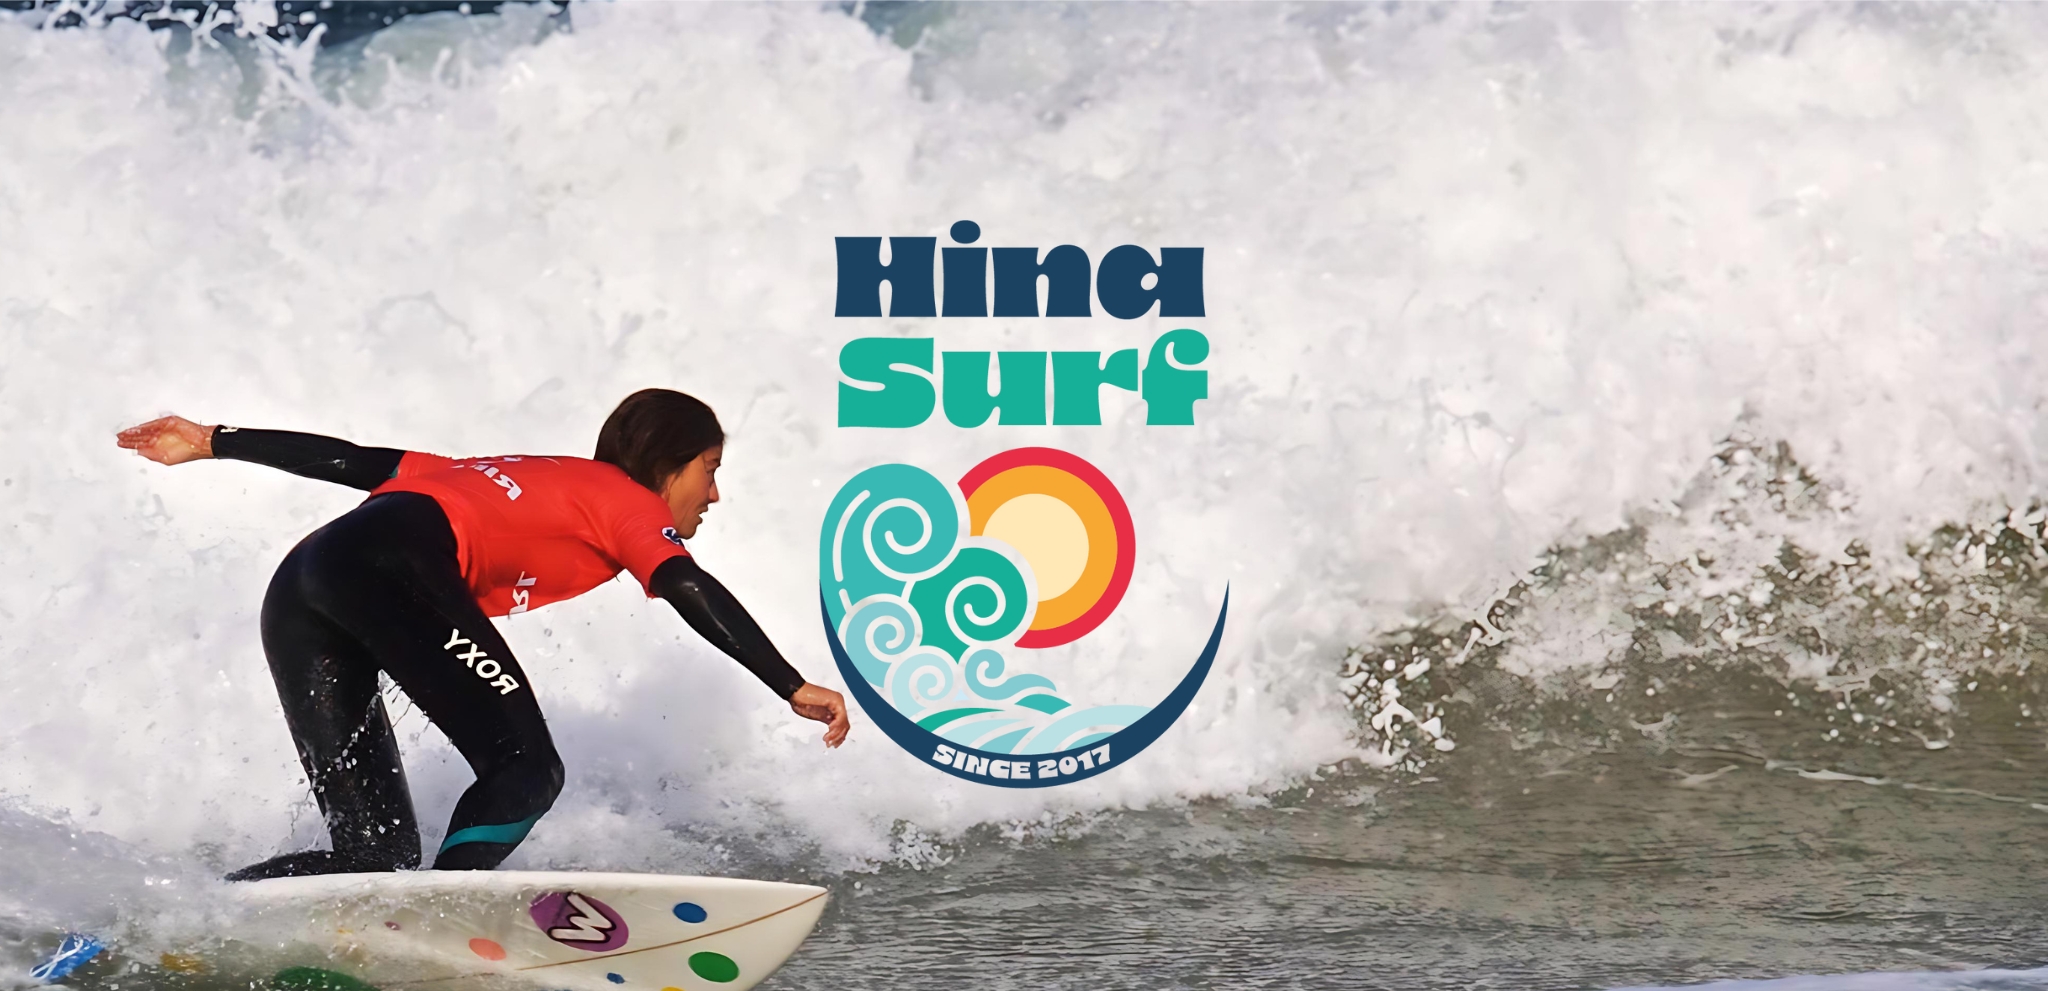 Hina surf 2